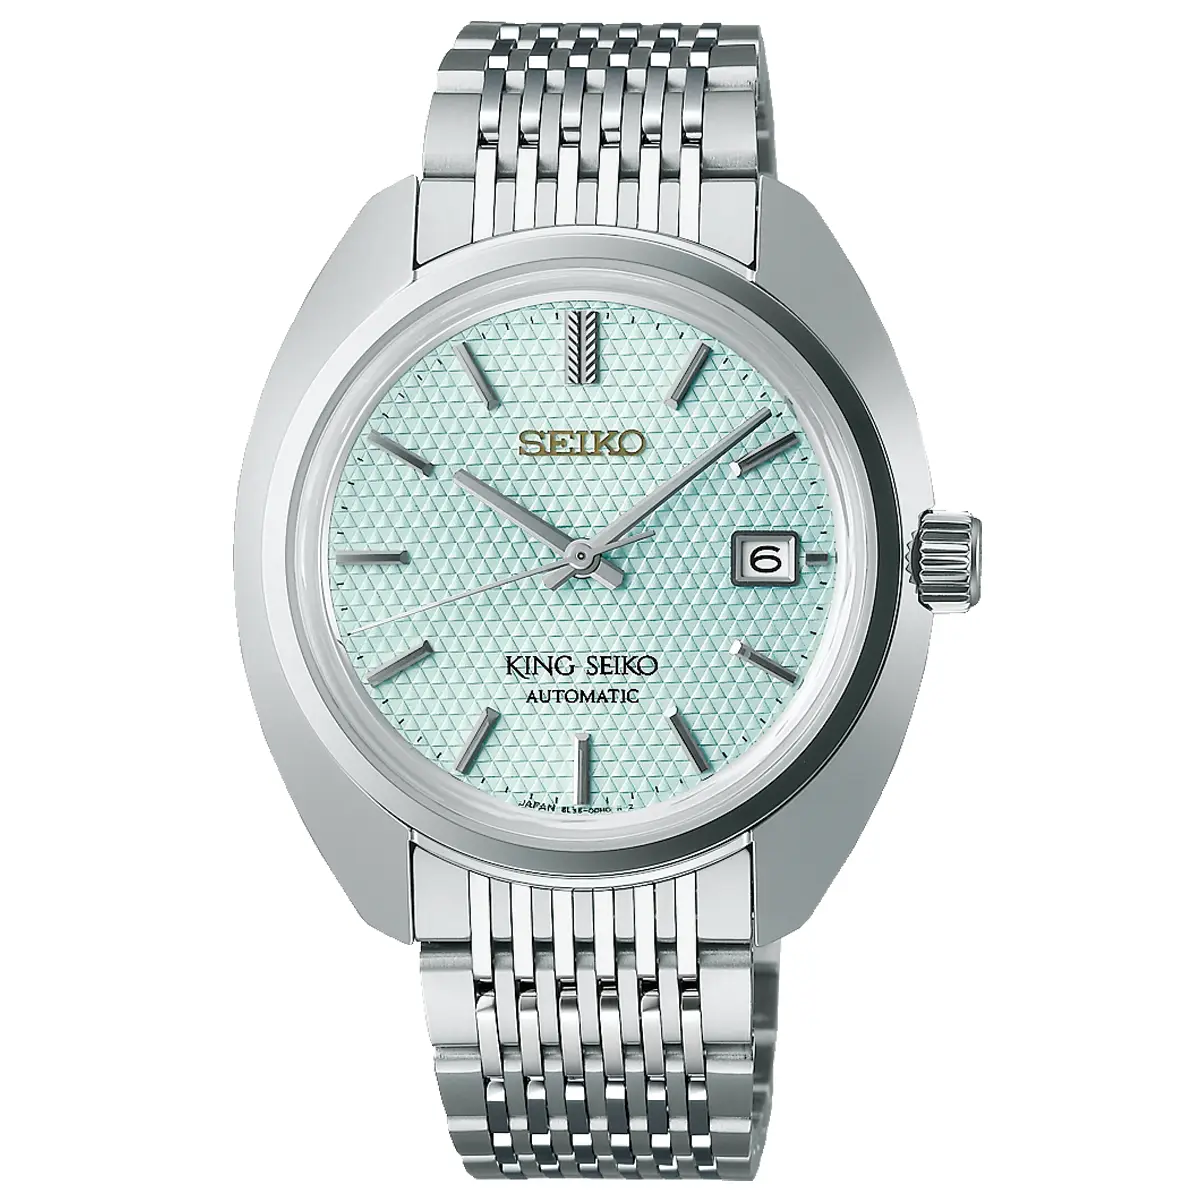 Đồng hồ King Seiko KS1969 Seiko Brand 100th Anniversary Limited Edition SDKA023 (SJE115) với mặt số xanh nhạt. Dây đeo bằng thép. Thân vỏ bằng thép.